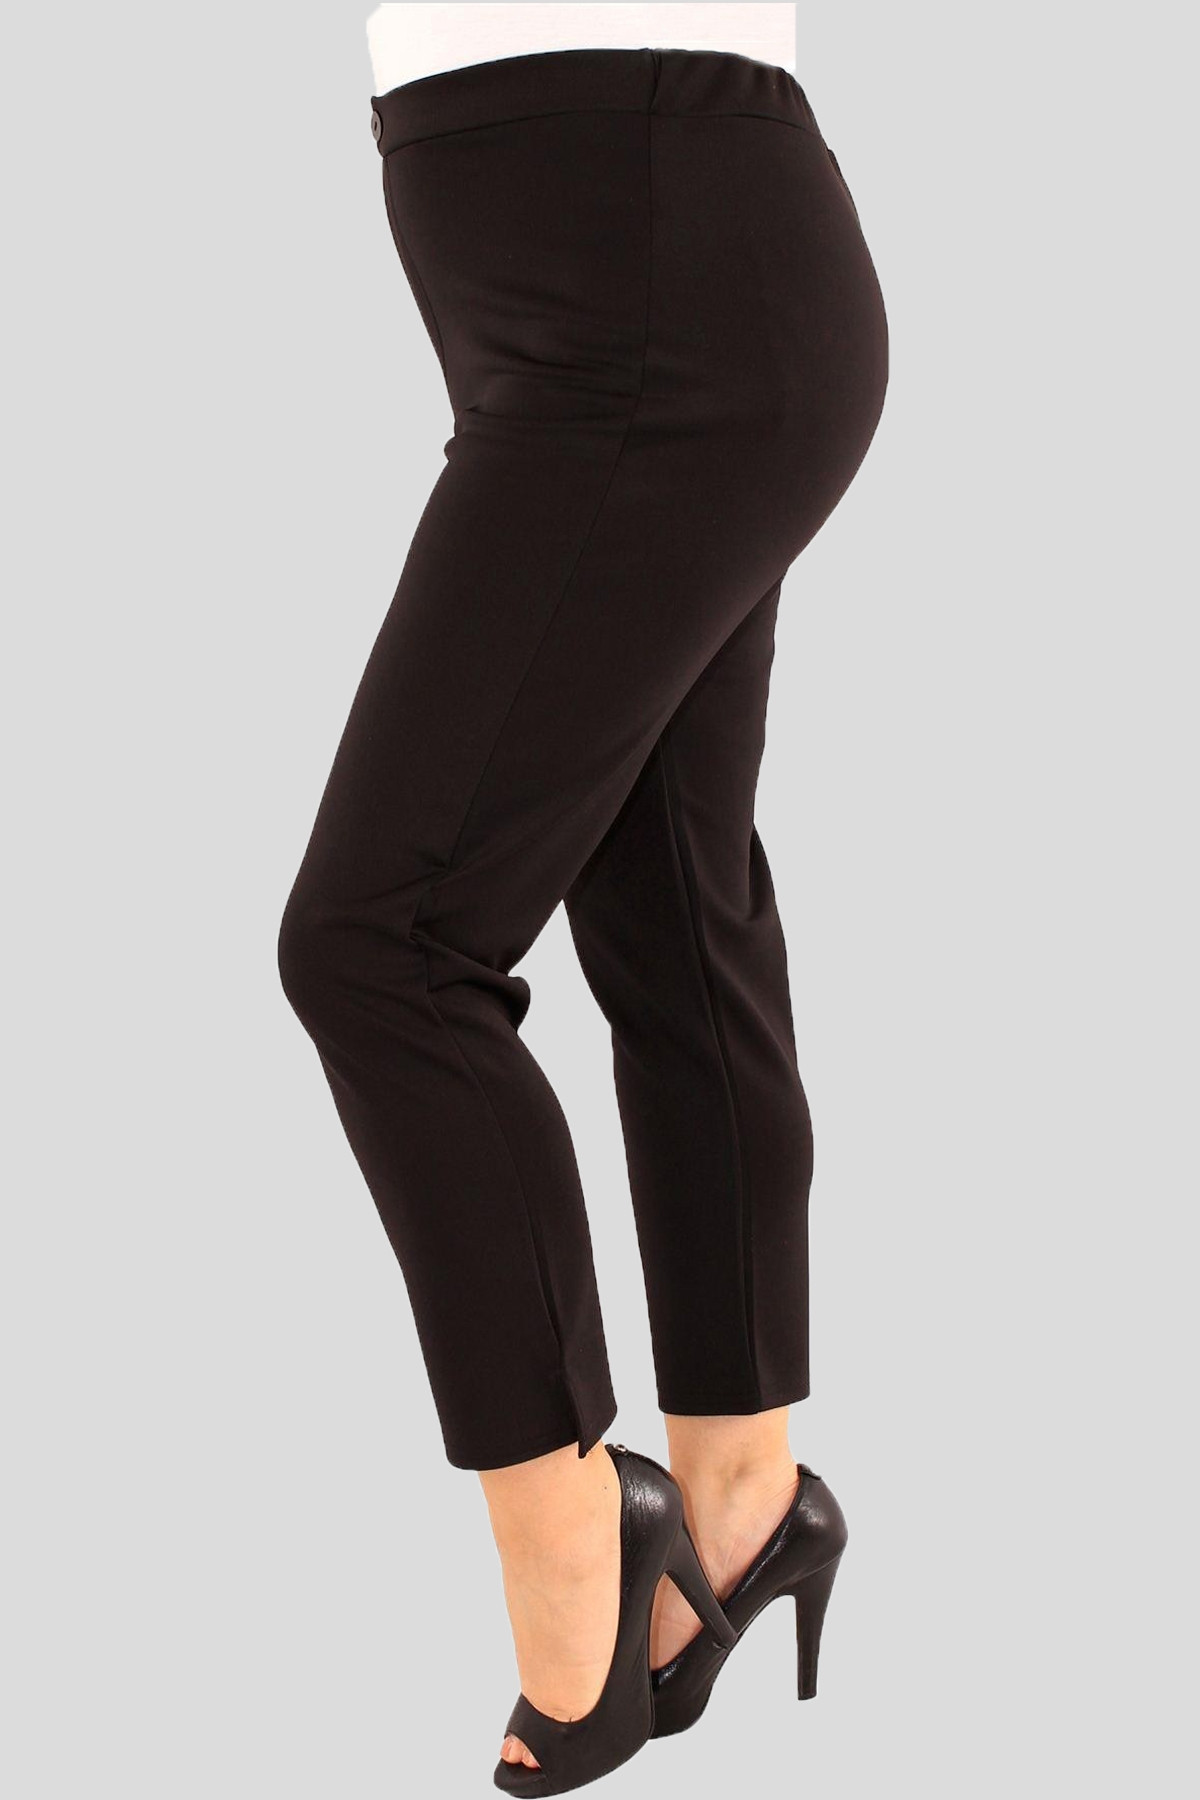 Freya Plus Size Plain Scuba Stretch Trousers 16-24